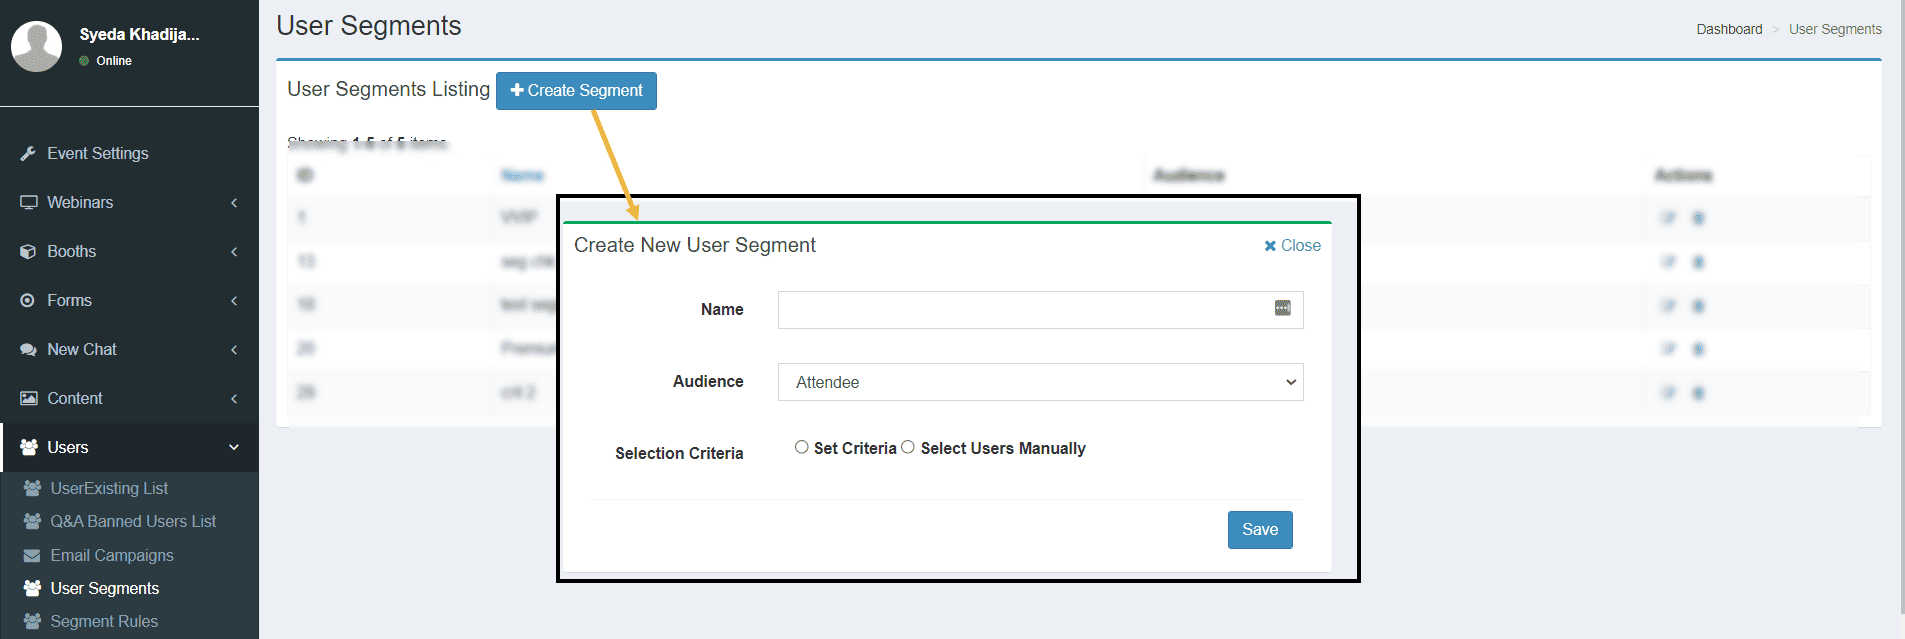 user segmentation in event registration form